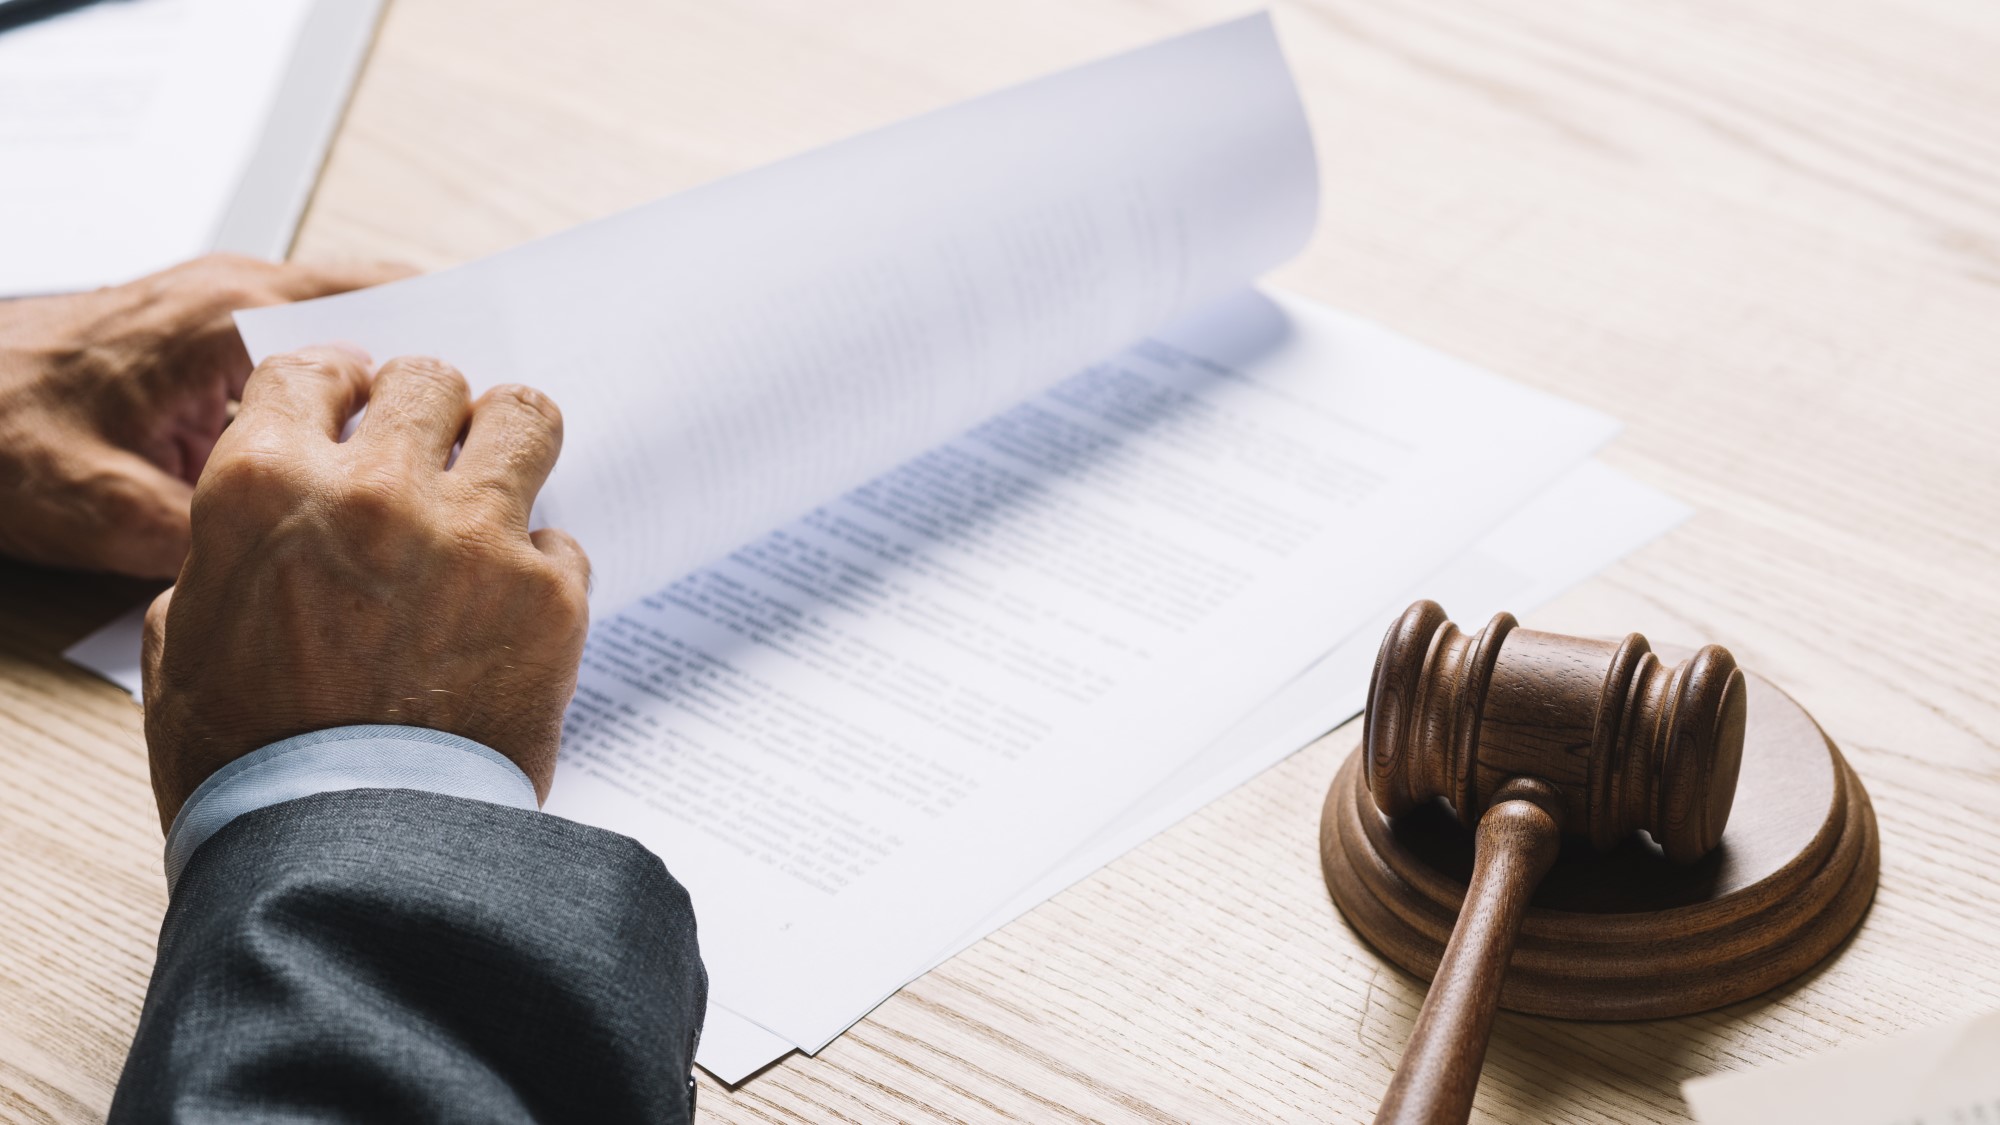 עורך דין מול שולחן עם מסמכים ופטיש בית משפט בצבע חום